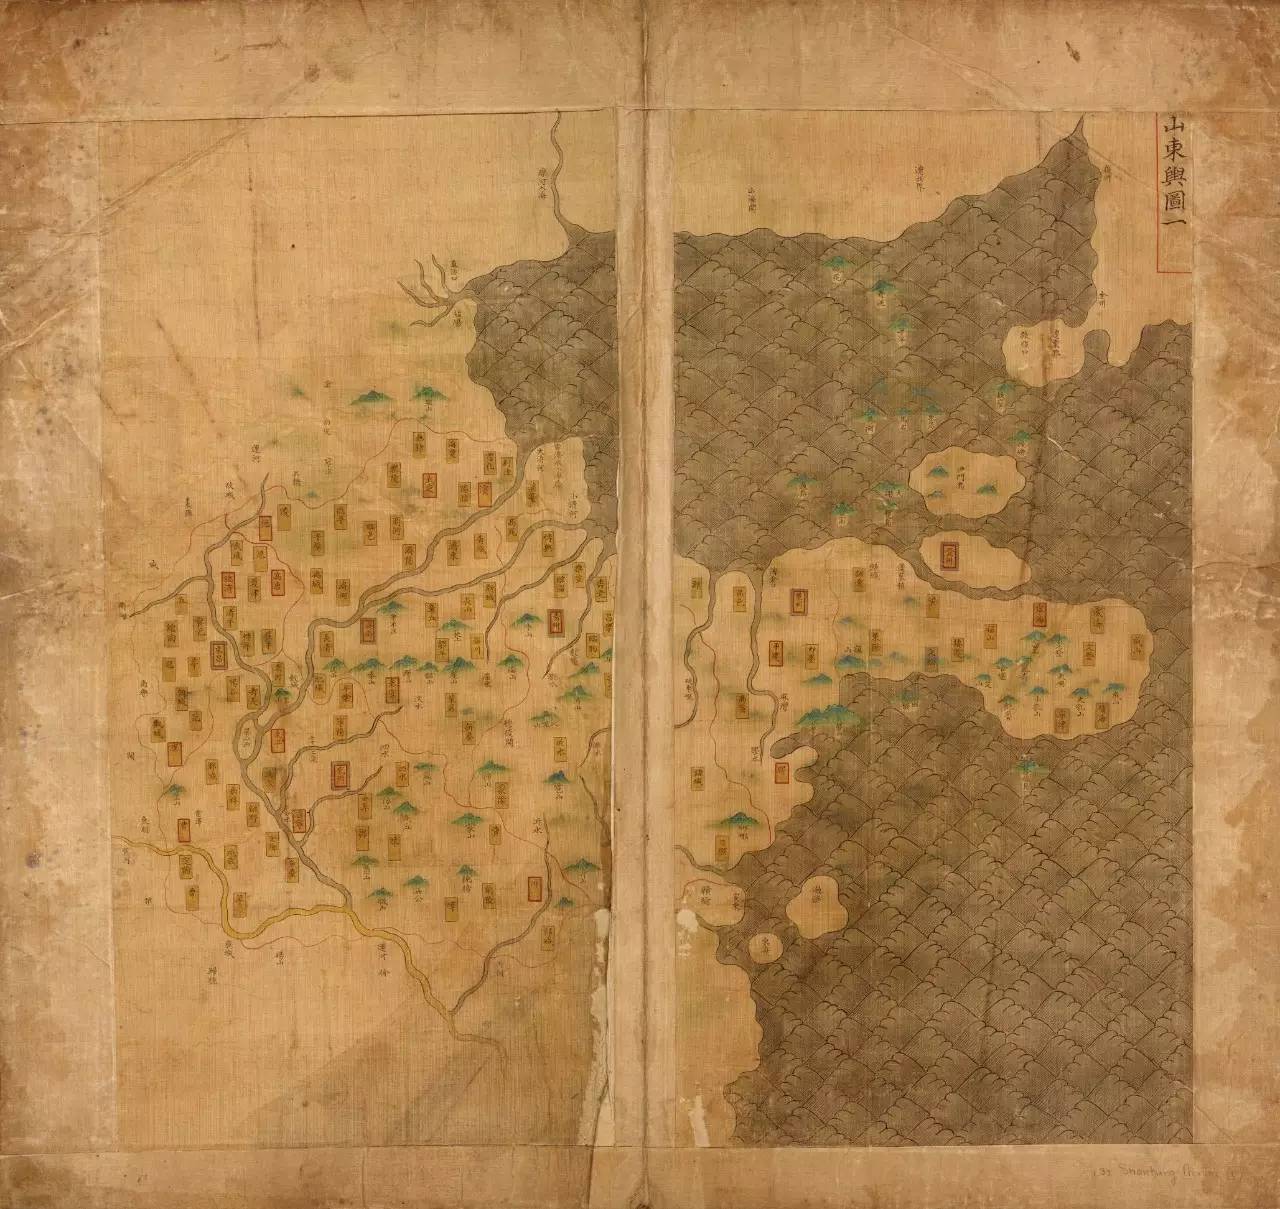 图说:「大明舆地图」 明朝人画的中国地图